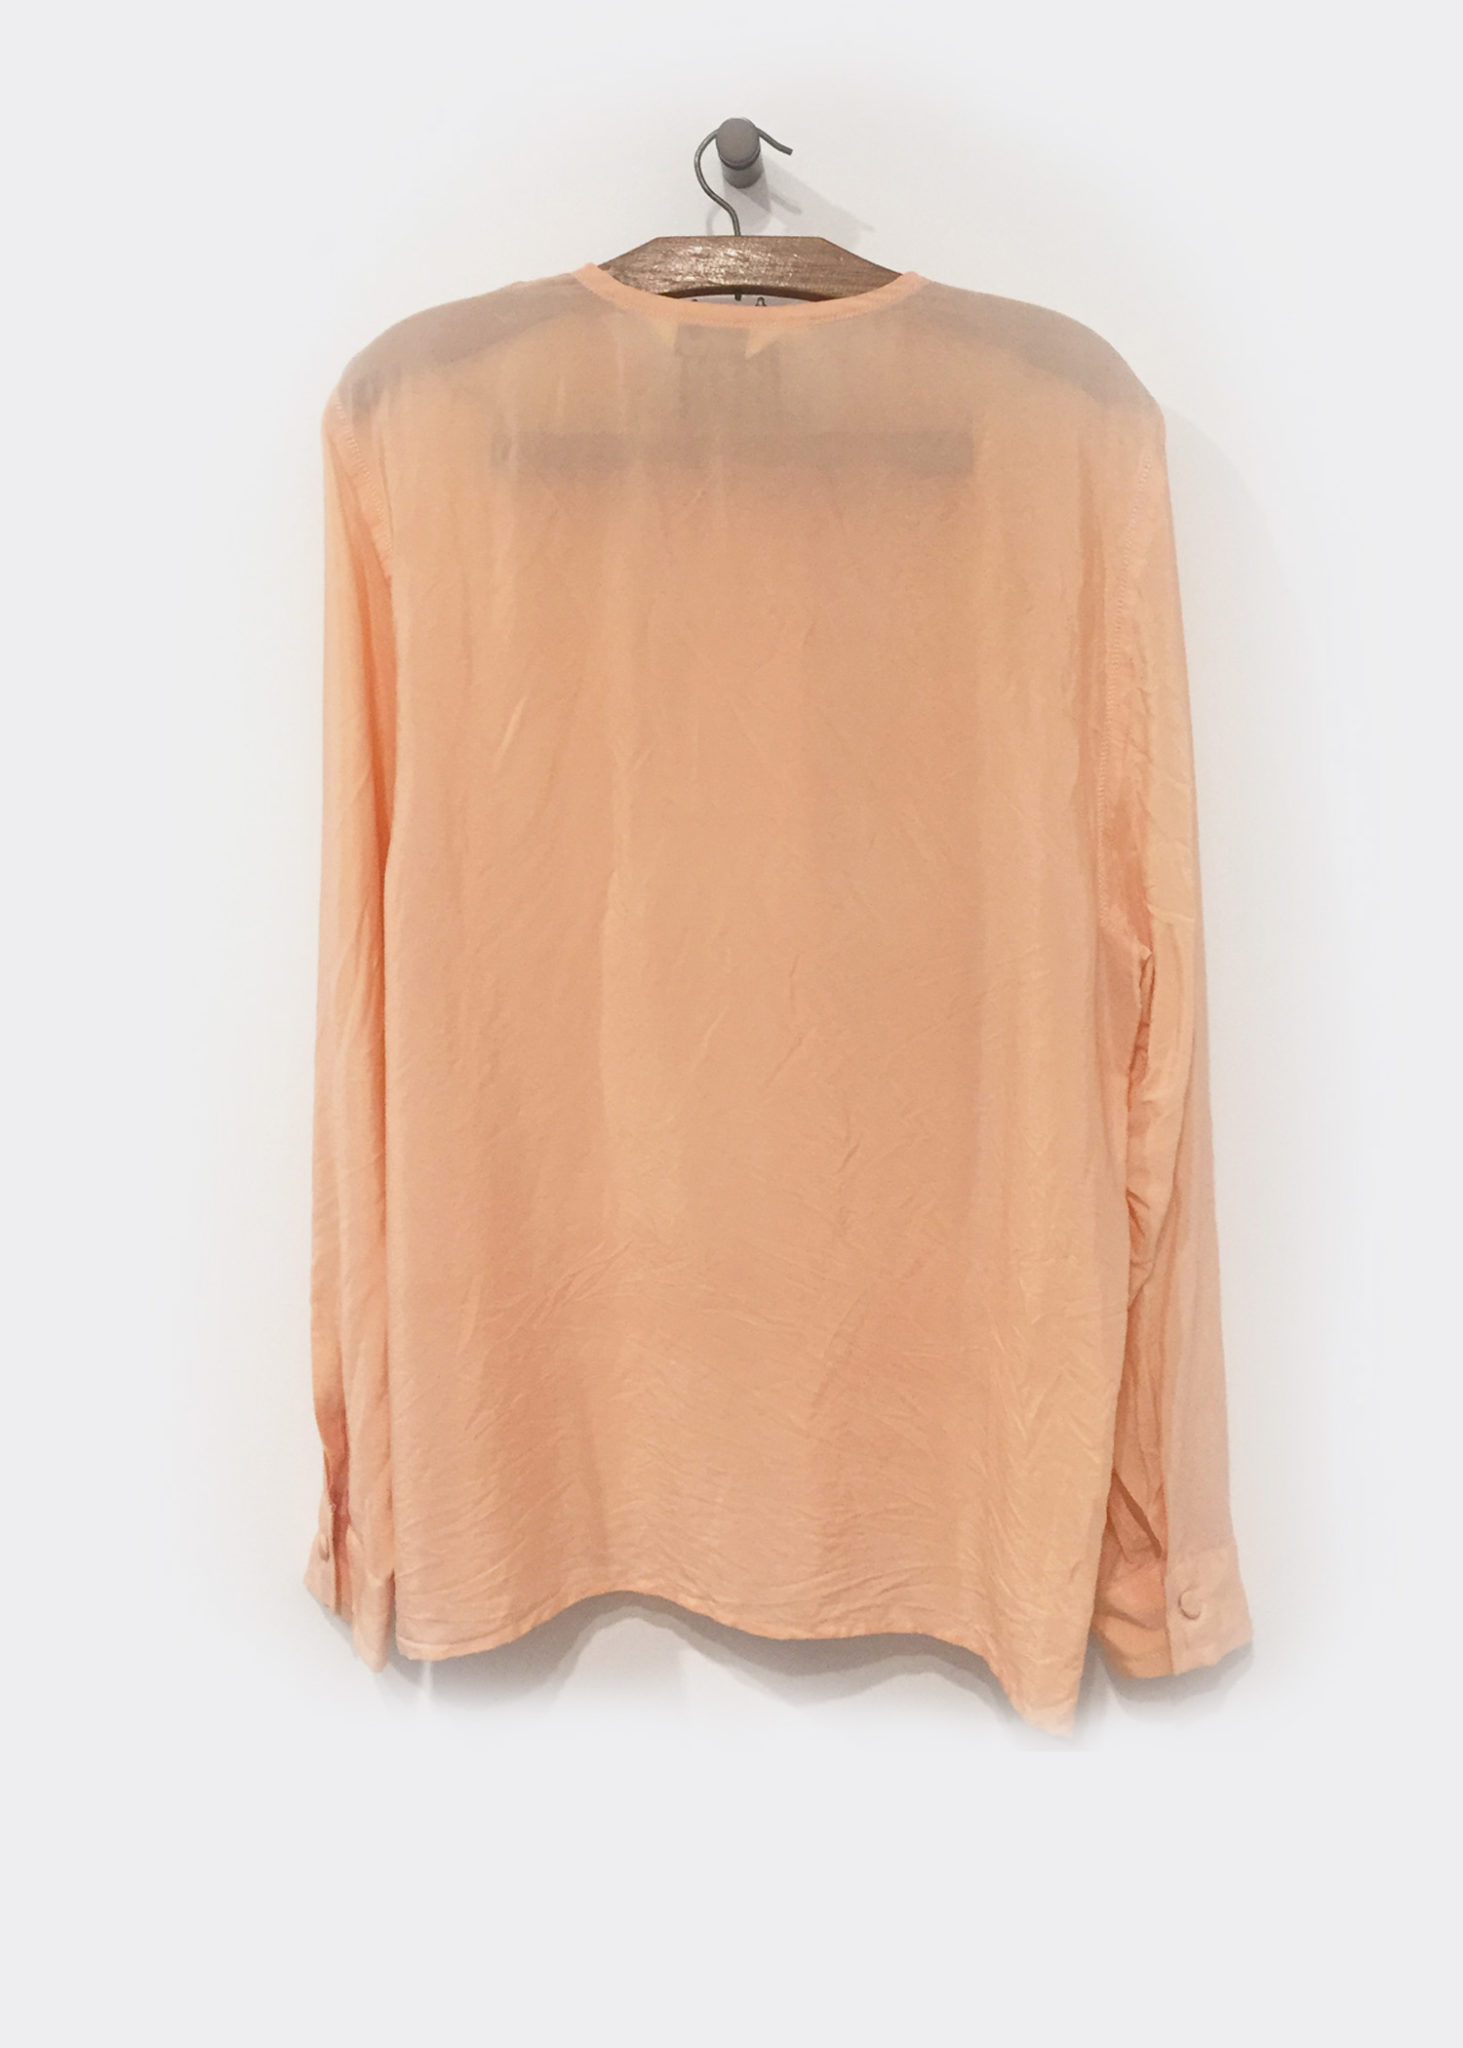 Peach Blouse Silk Long Sleeve 1930s Glamor style by 1980s – Jimmy Buffalo